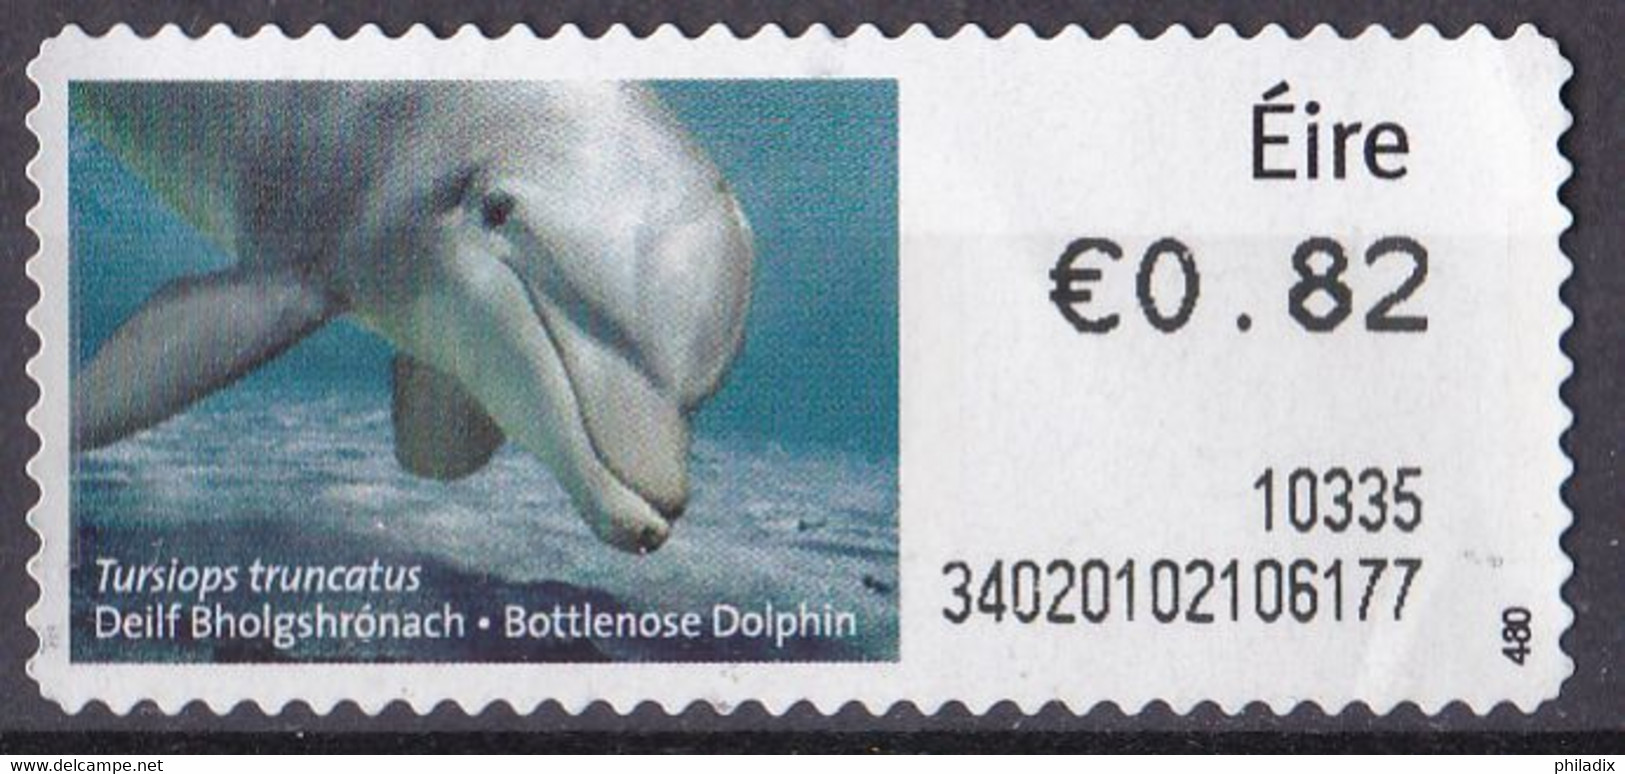 Irland Automatenmarke (0,82) Delphin (A2-40) - Frankeervignetten (Frama)